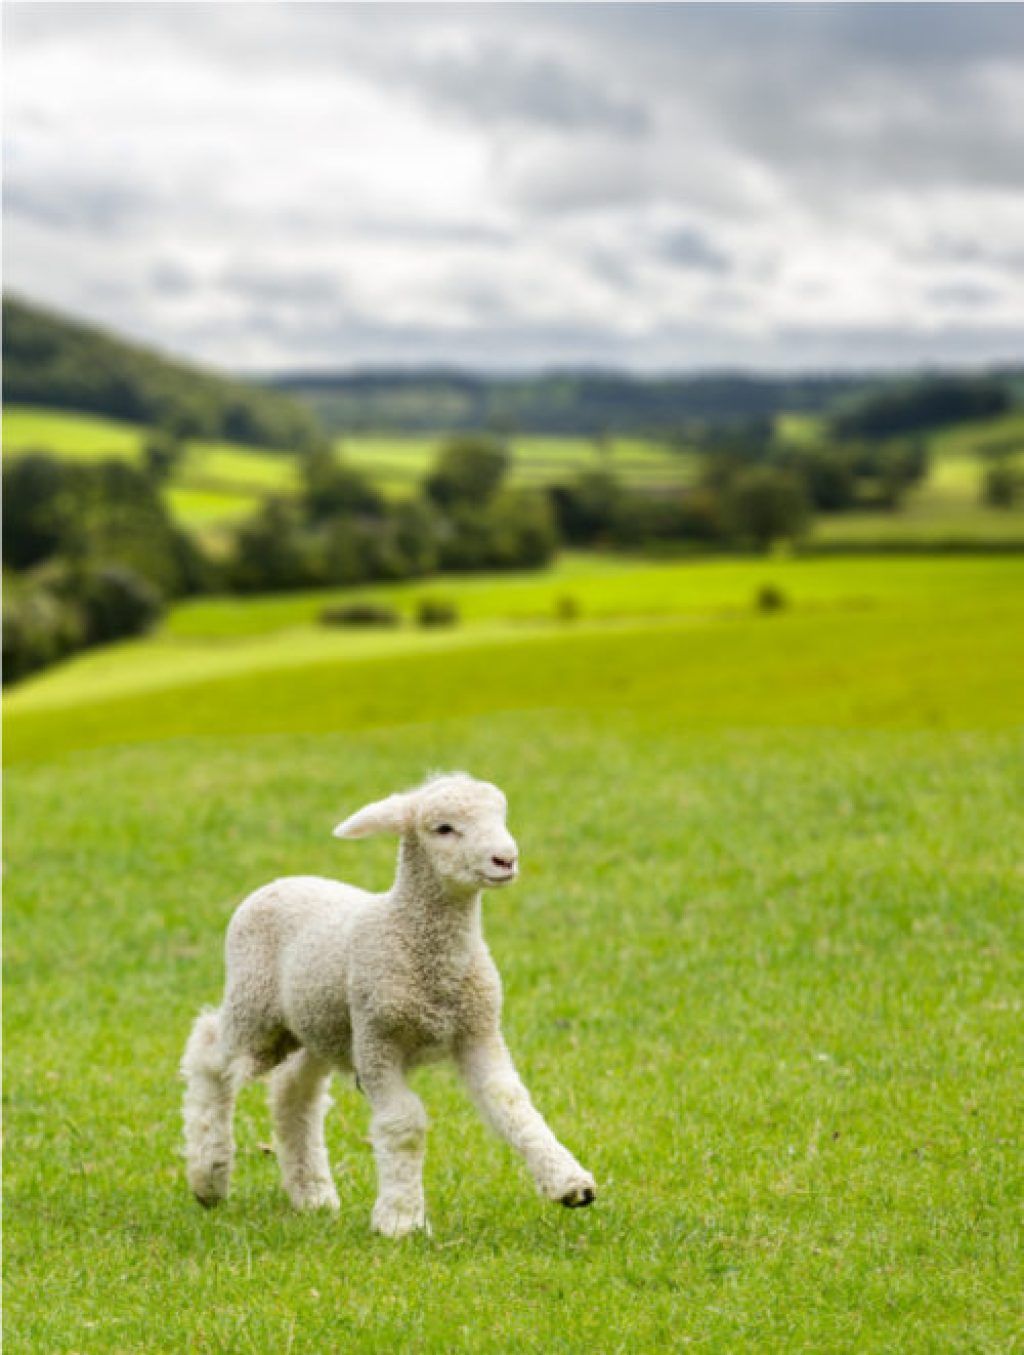 תגליות מדעיות של כבשים לתינוקות